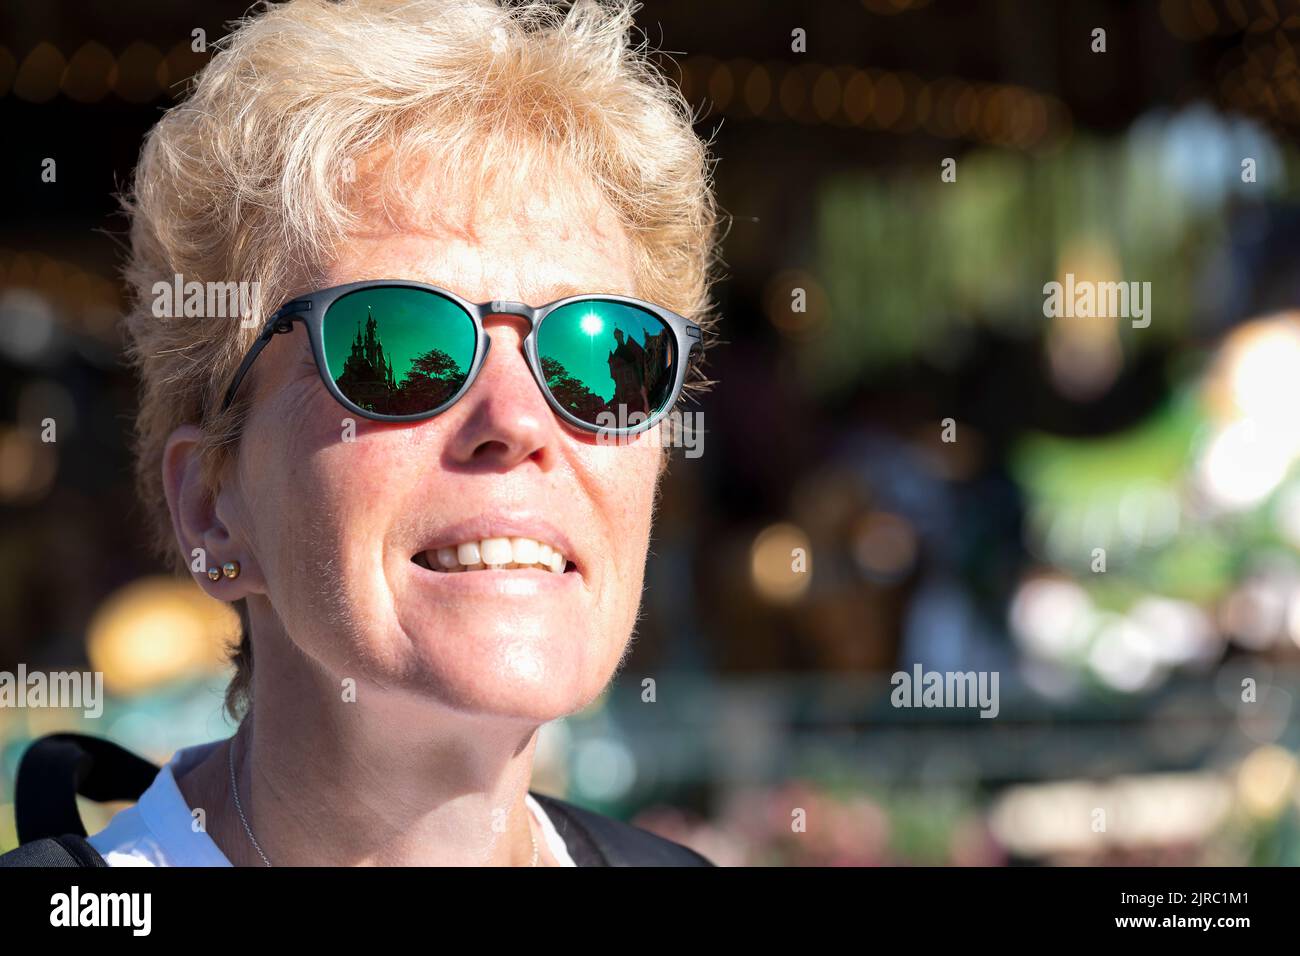 Eine weibliche Besucherin des Disneyland Parks, Paris, Frankreich. Sie blickt auf das Dornröschenschloss, was sich in ihrer Oakley-Sonnenbrille widerspiegelt Stockfoto